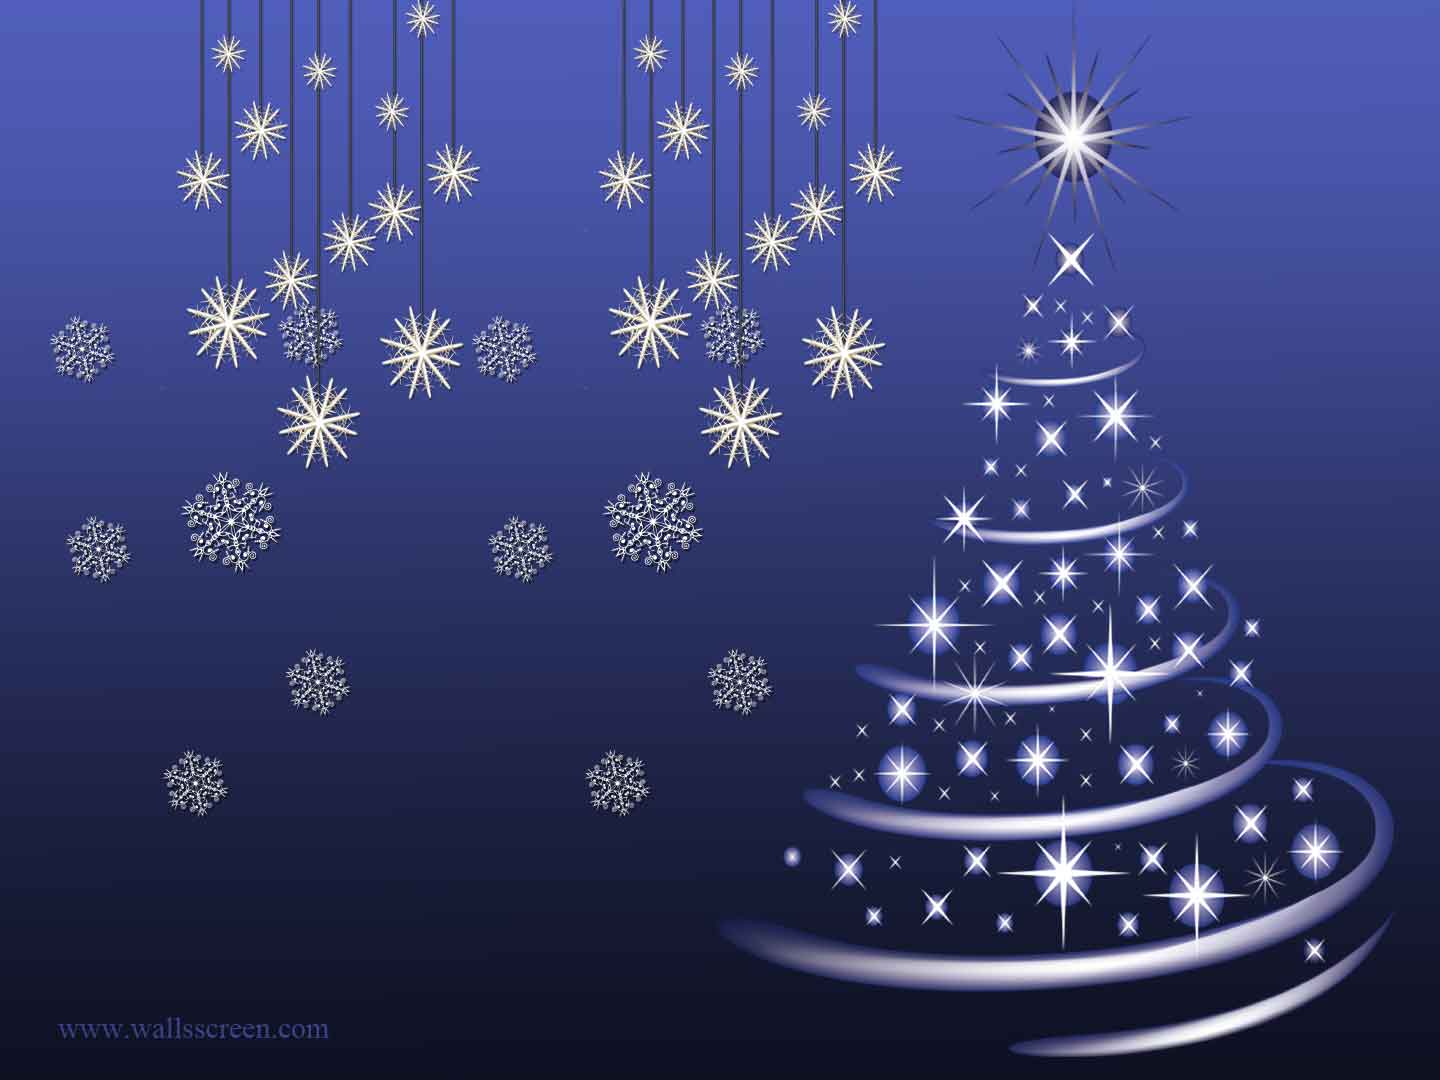 Phông nền Giáng sinh màu xanh: Giáng sinh không chỉ là màu đỏ và trắng. Màu xanh Giáng Sinh cũng là một phần quan trọng, vì vậy tại sao không trang trí màn hình của bạn với phông nền Giáng Sinh màu xanh độc đáo này? Với những hình ảnh trang trí tuyệt đẹp, phông nền này nhất định sẽ khiến bạn cảm thấy thư giãn và thoải mái.